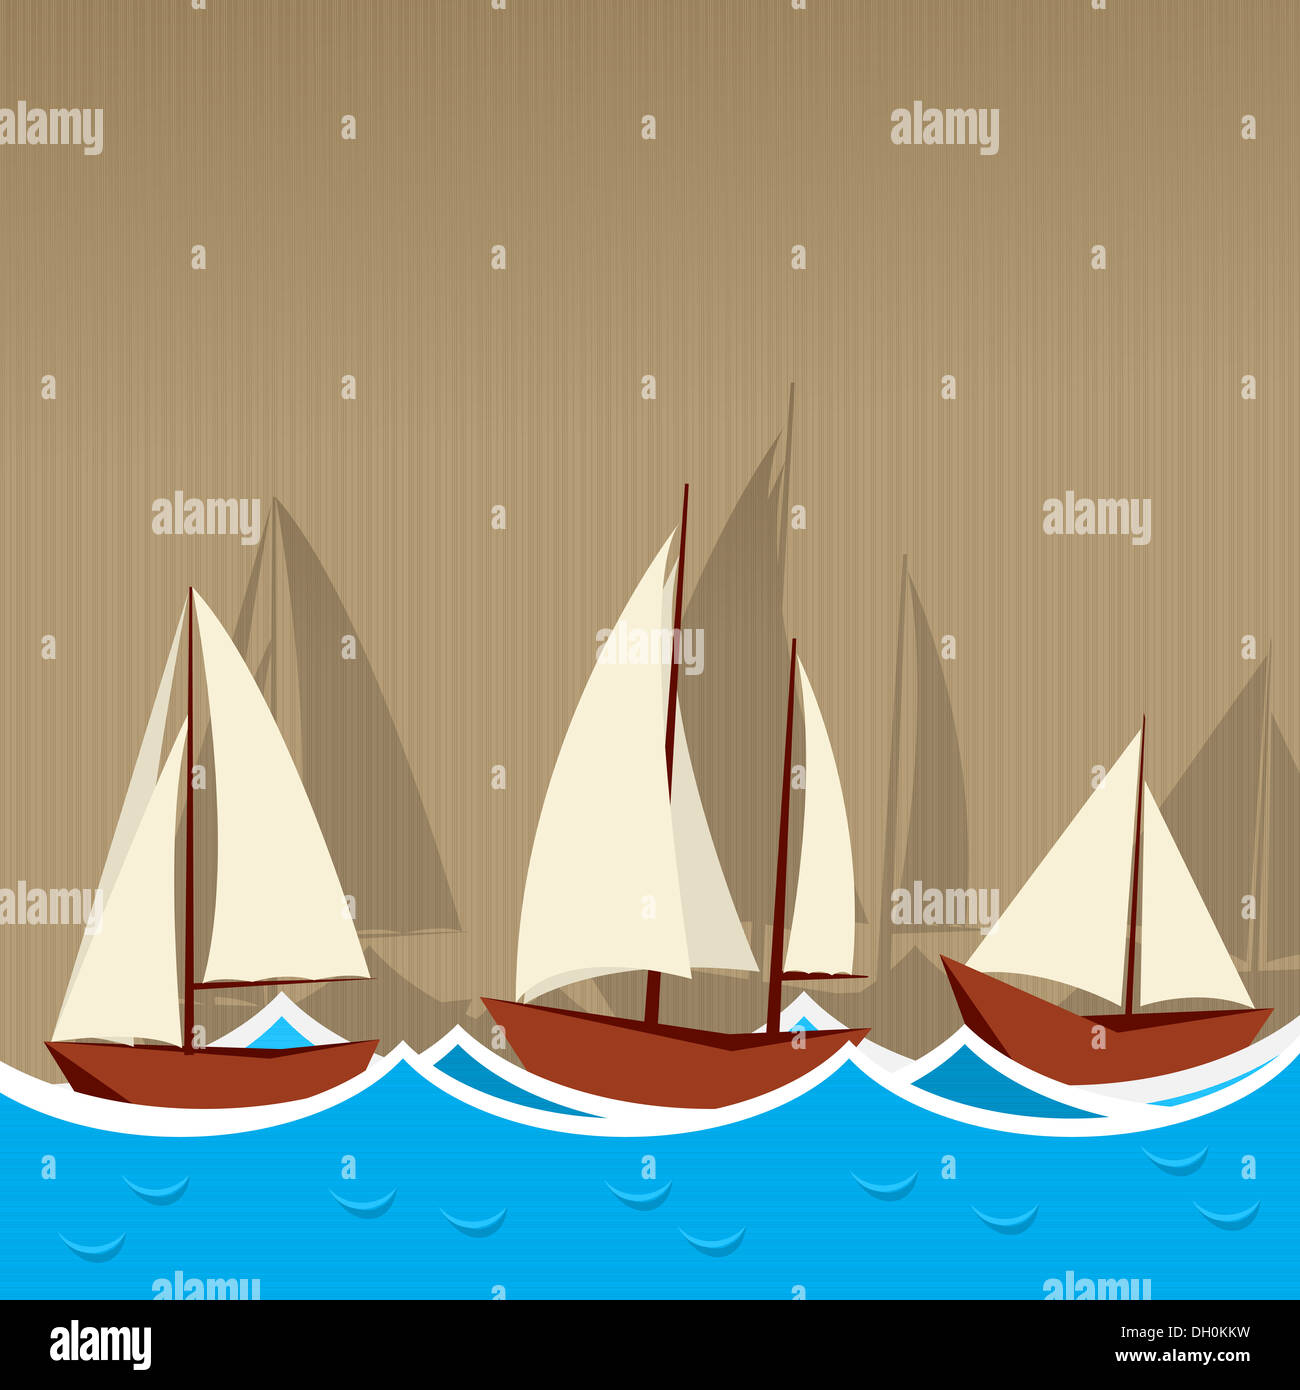 Sailing ships background Stock Photo